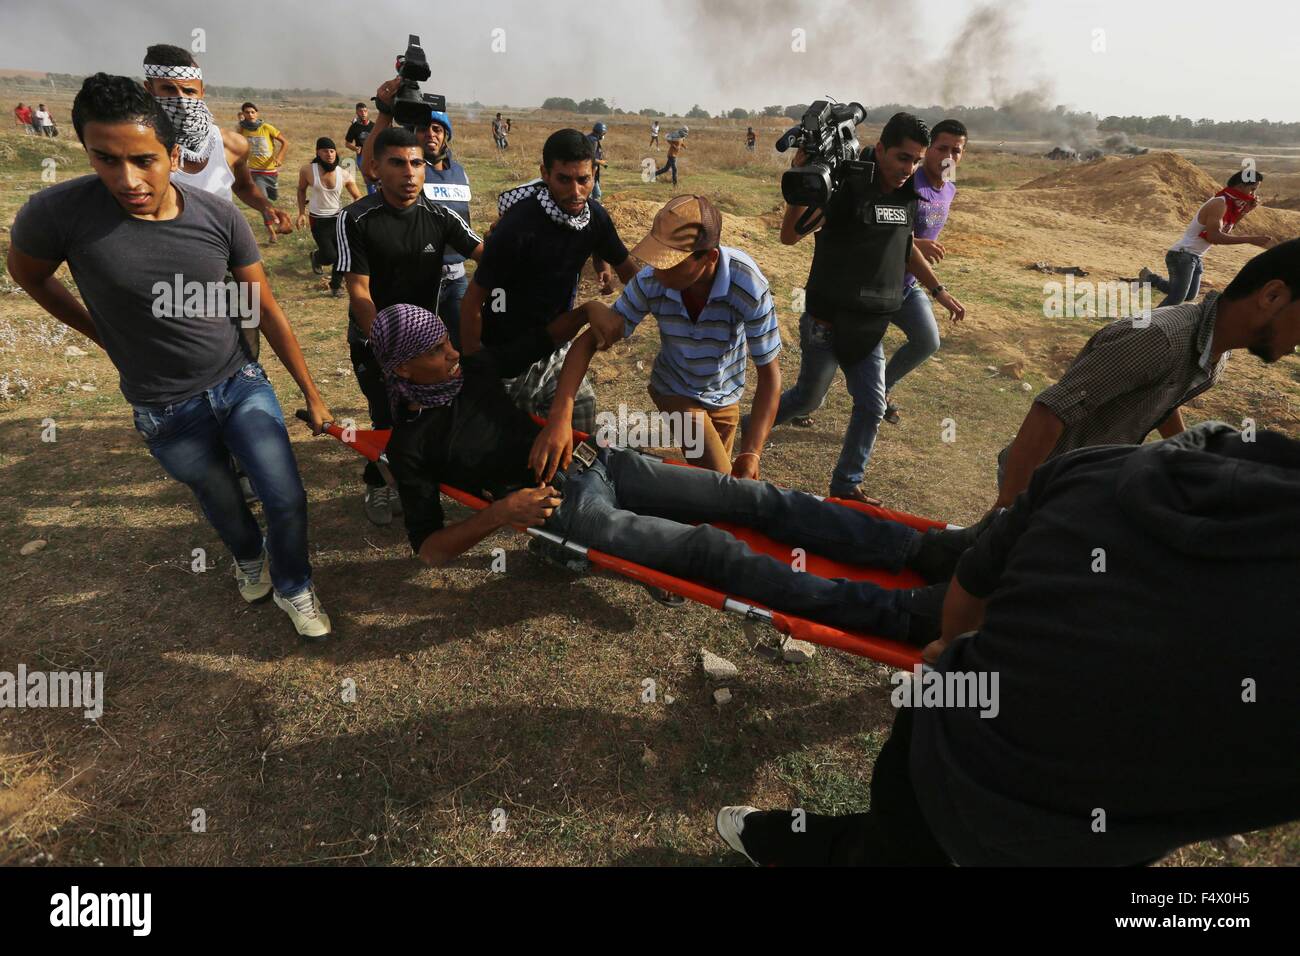 Buriej, Gazastreifen, Palästinensische Gebiete. 23. Oktober 2015. Palästinensische Demonstranten tragen einen verletzten Kameraden bei Zusammenstößen mit israelischen Sicherheitskräften in der Nähe der Grenze zwischen israelischen und zentrale Gaza-Streifen, am 23. Oktober 2015. Palästinensischen Fraktionen gefordert Massenkundgebungen gegen Israel in den besetzten Westjordanland und Ostjerusalem in einen '' Tag des Zorns '' am Freitag, als Welt und regionale Mächte angedrückt mit Vorträgen zu versuchen, mehr als drei Wochen des Blutvergießens Credit Ende: Yasser Qudih/APA Bilder/ZUMA Draht/Alamy Live News Stockfoto